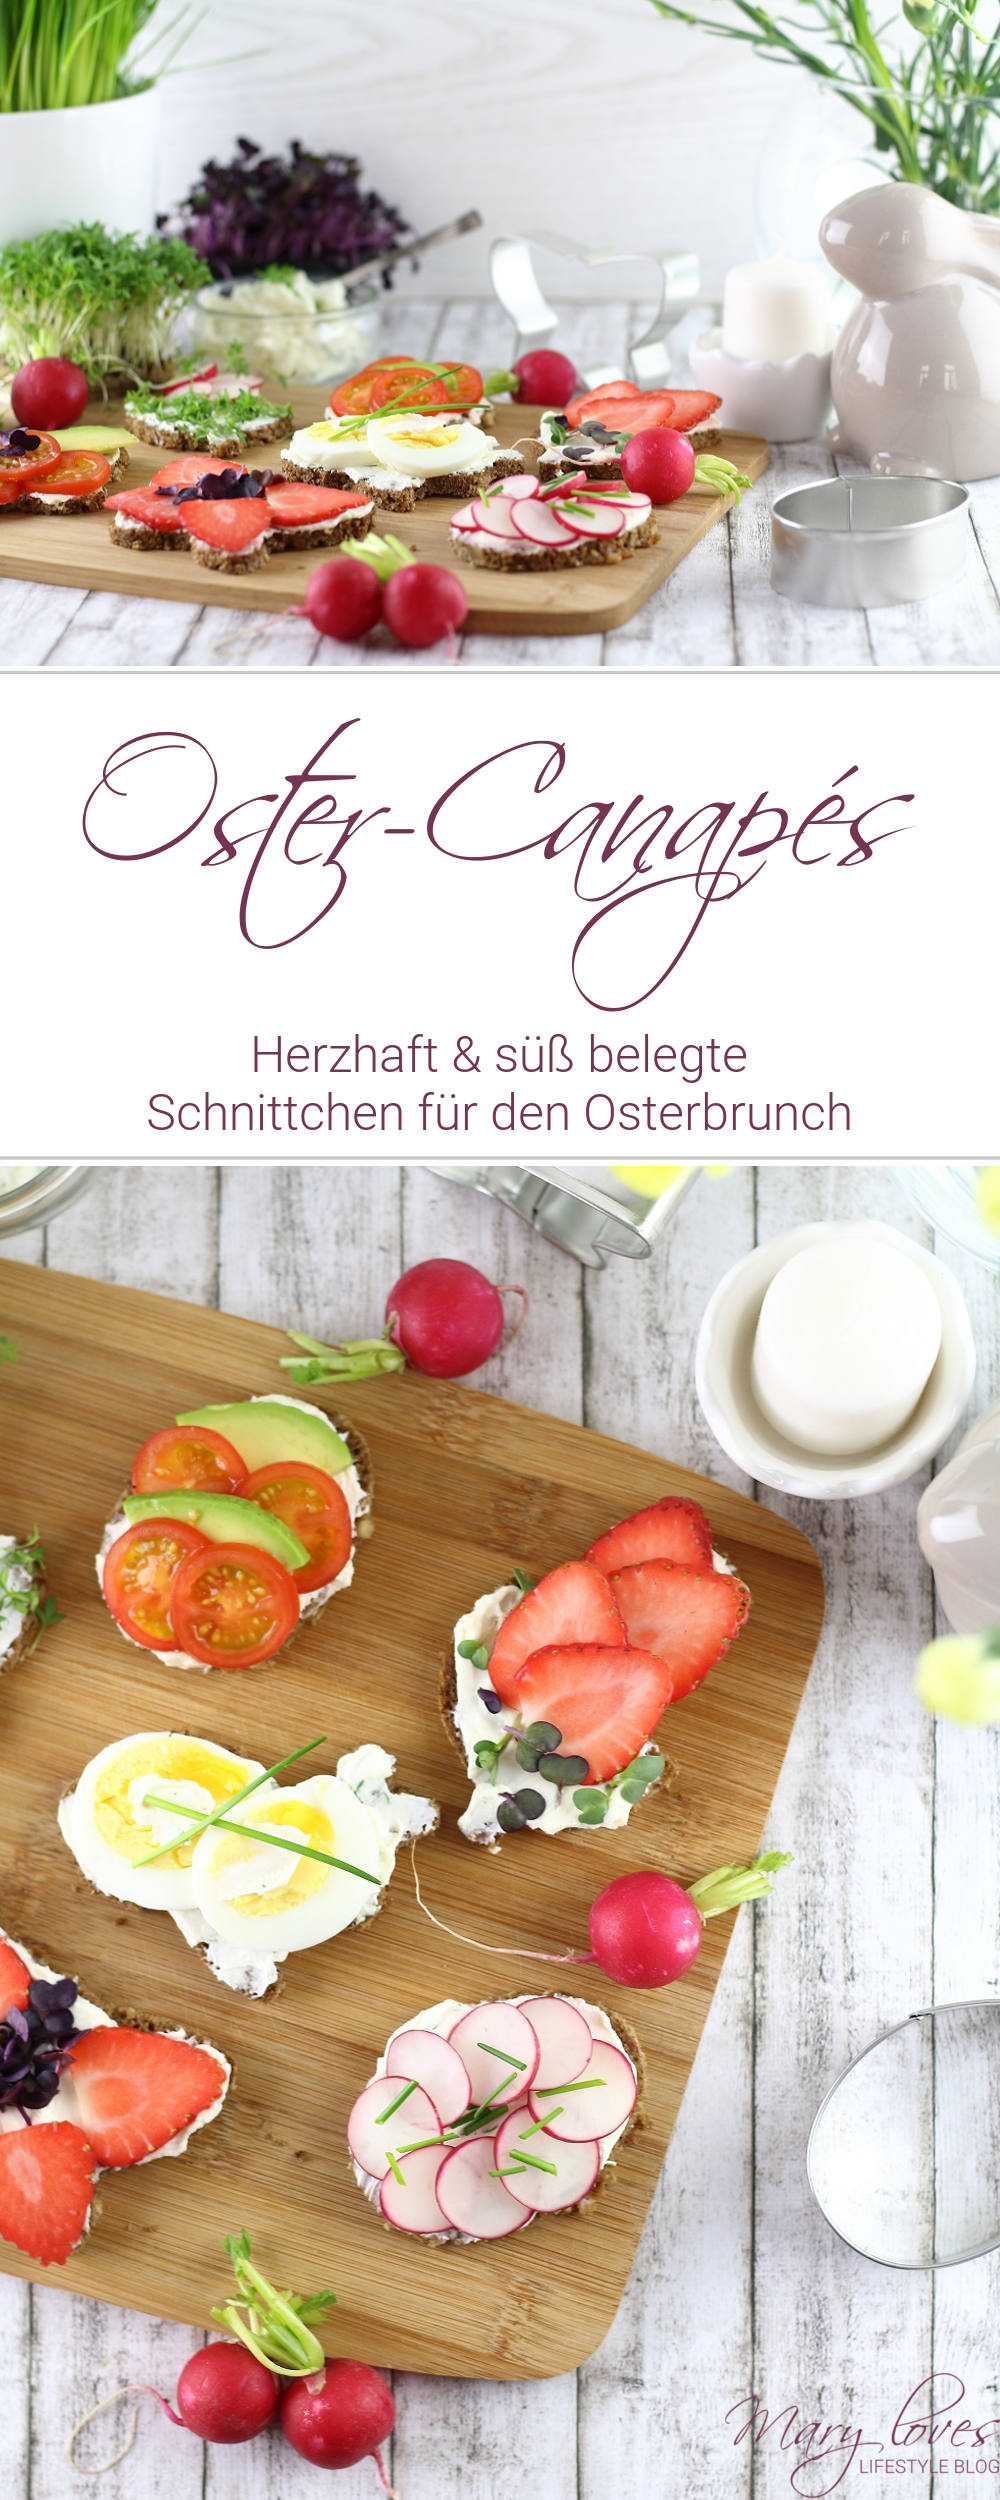 Herzhafte und süße Oster-Canapés als Vorspeise für den Osterbrunch - #ostern #ostercanapes #canapes #ostervorspeise #osterbrunch #osteridee #vegetarisch